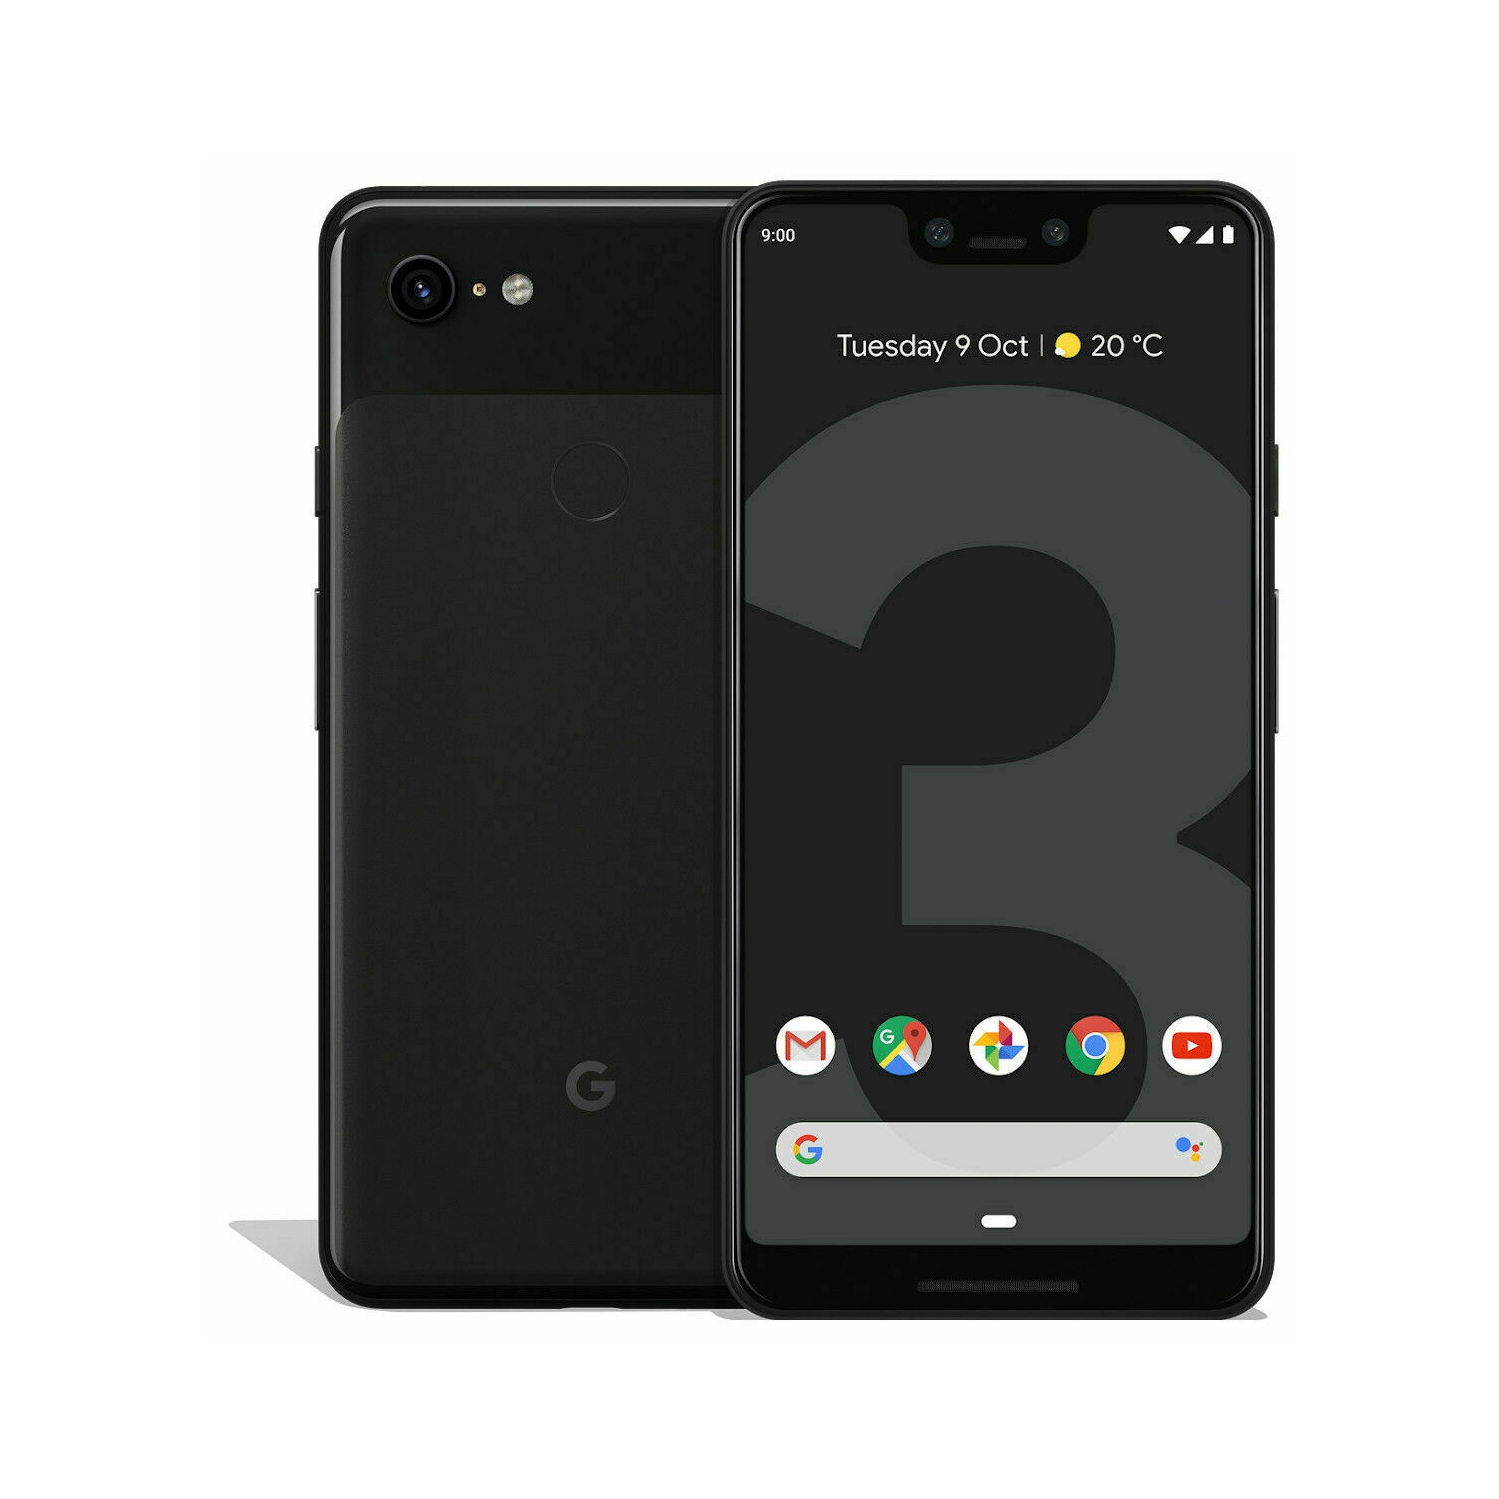 Google Pixel 3 XL 64GB Smartphone - Just Black - Unlocked - New